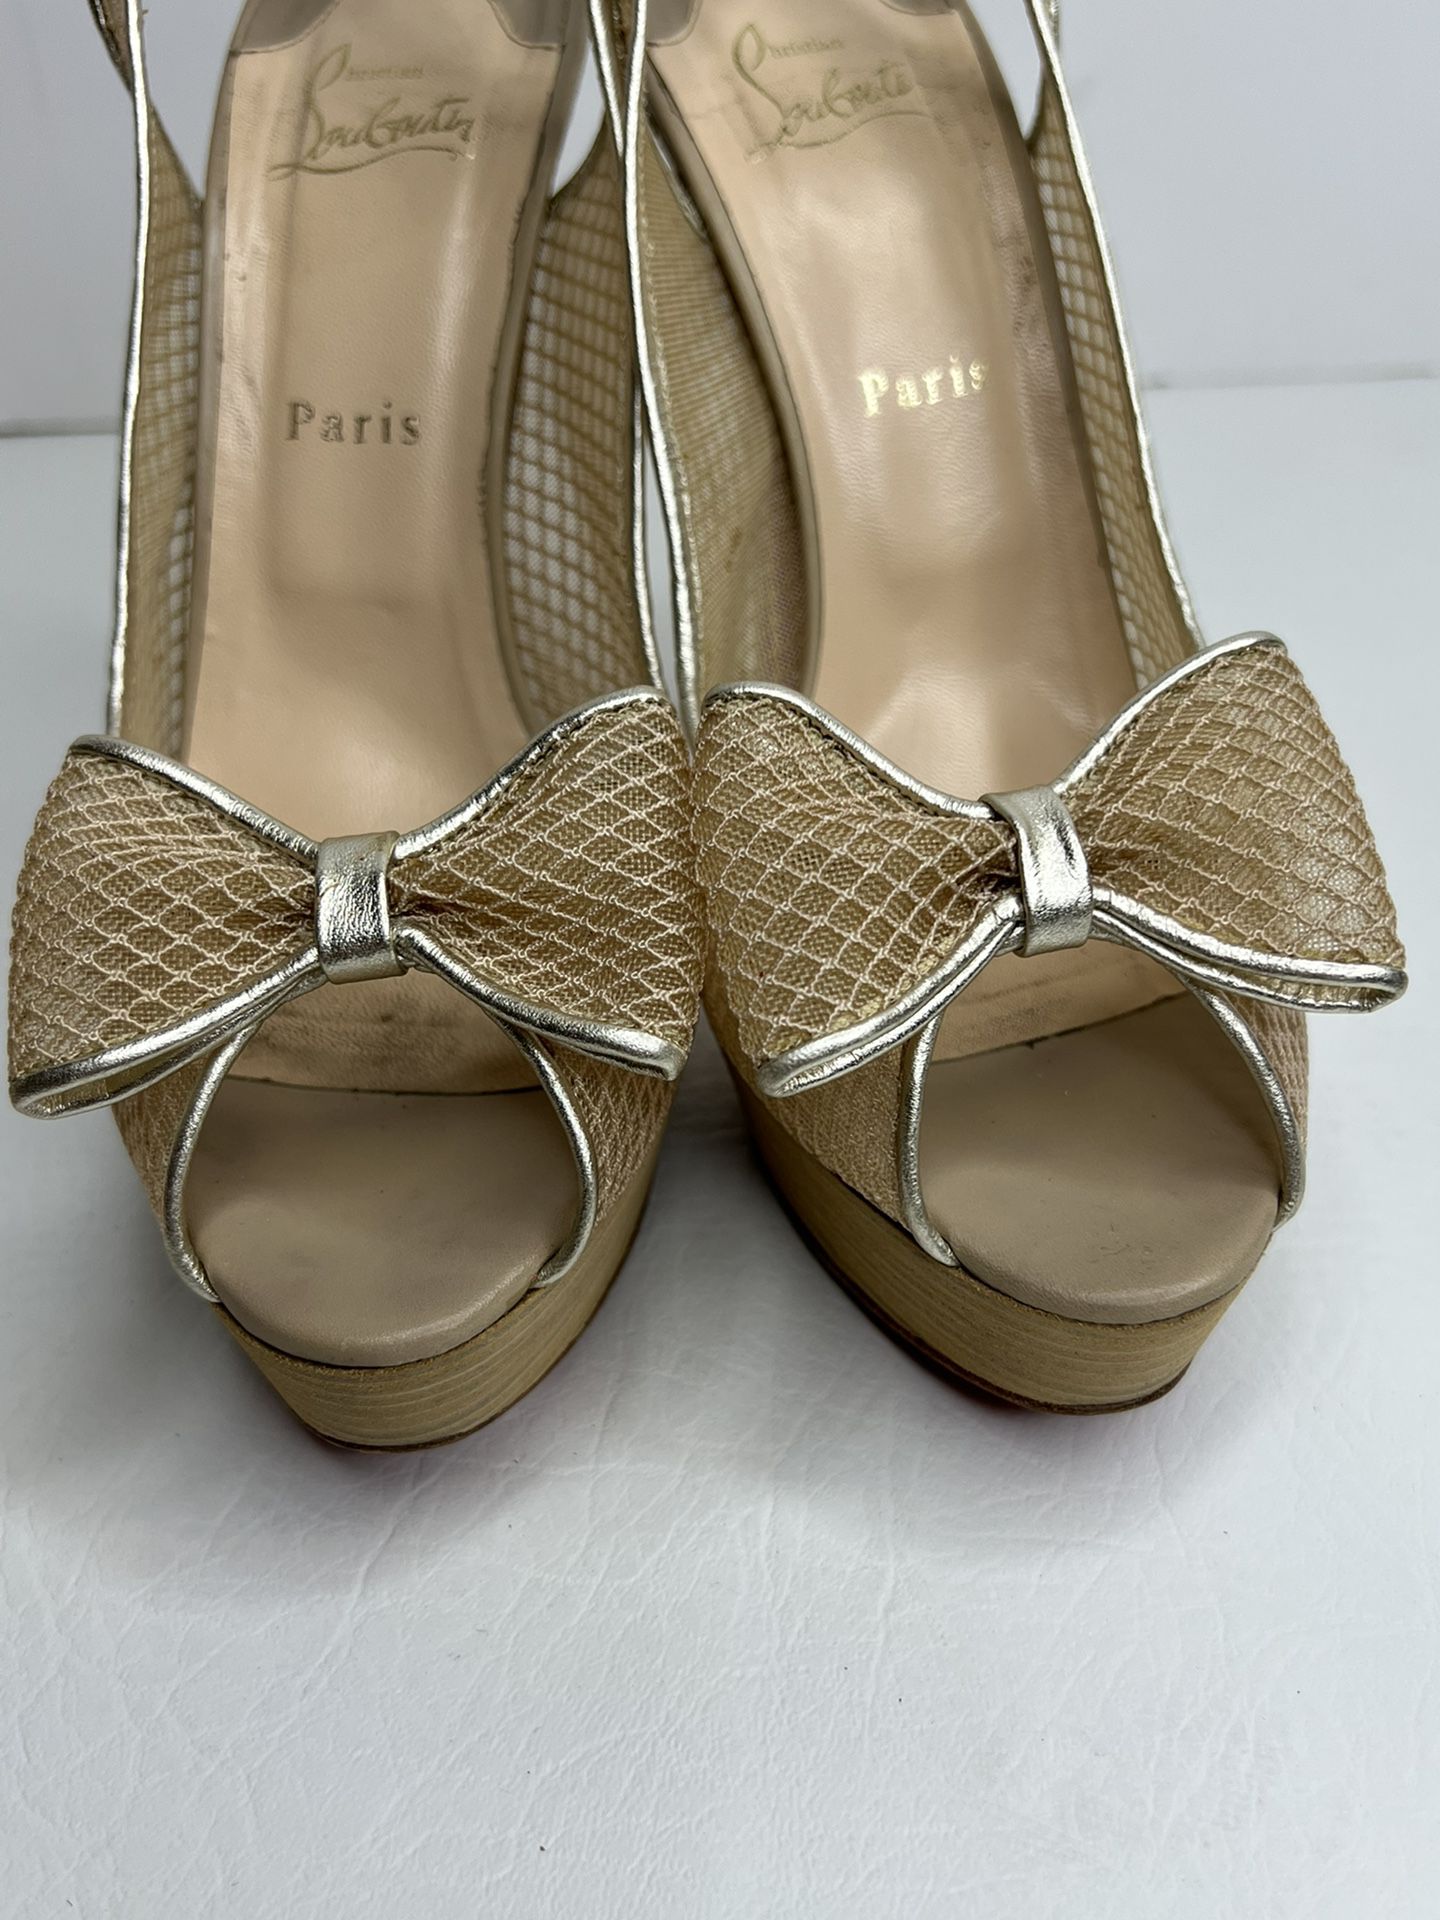 Christian Louboutin matte gold net heels pumps size 40.5